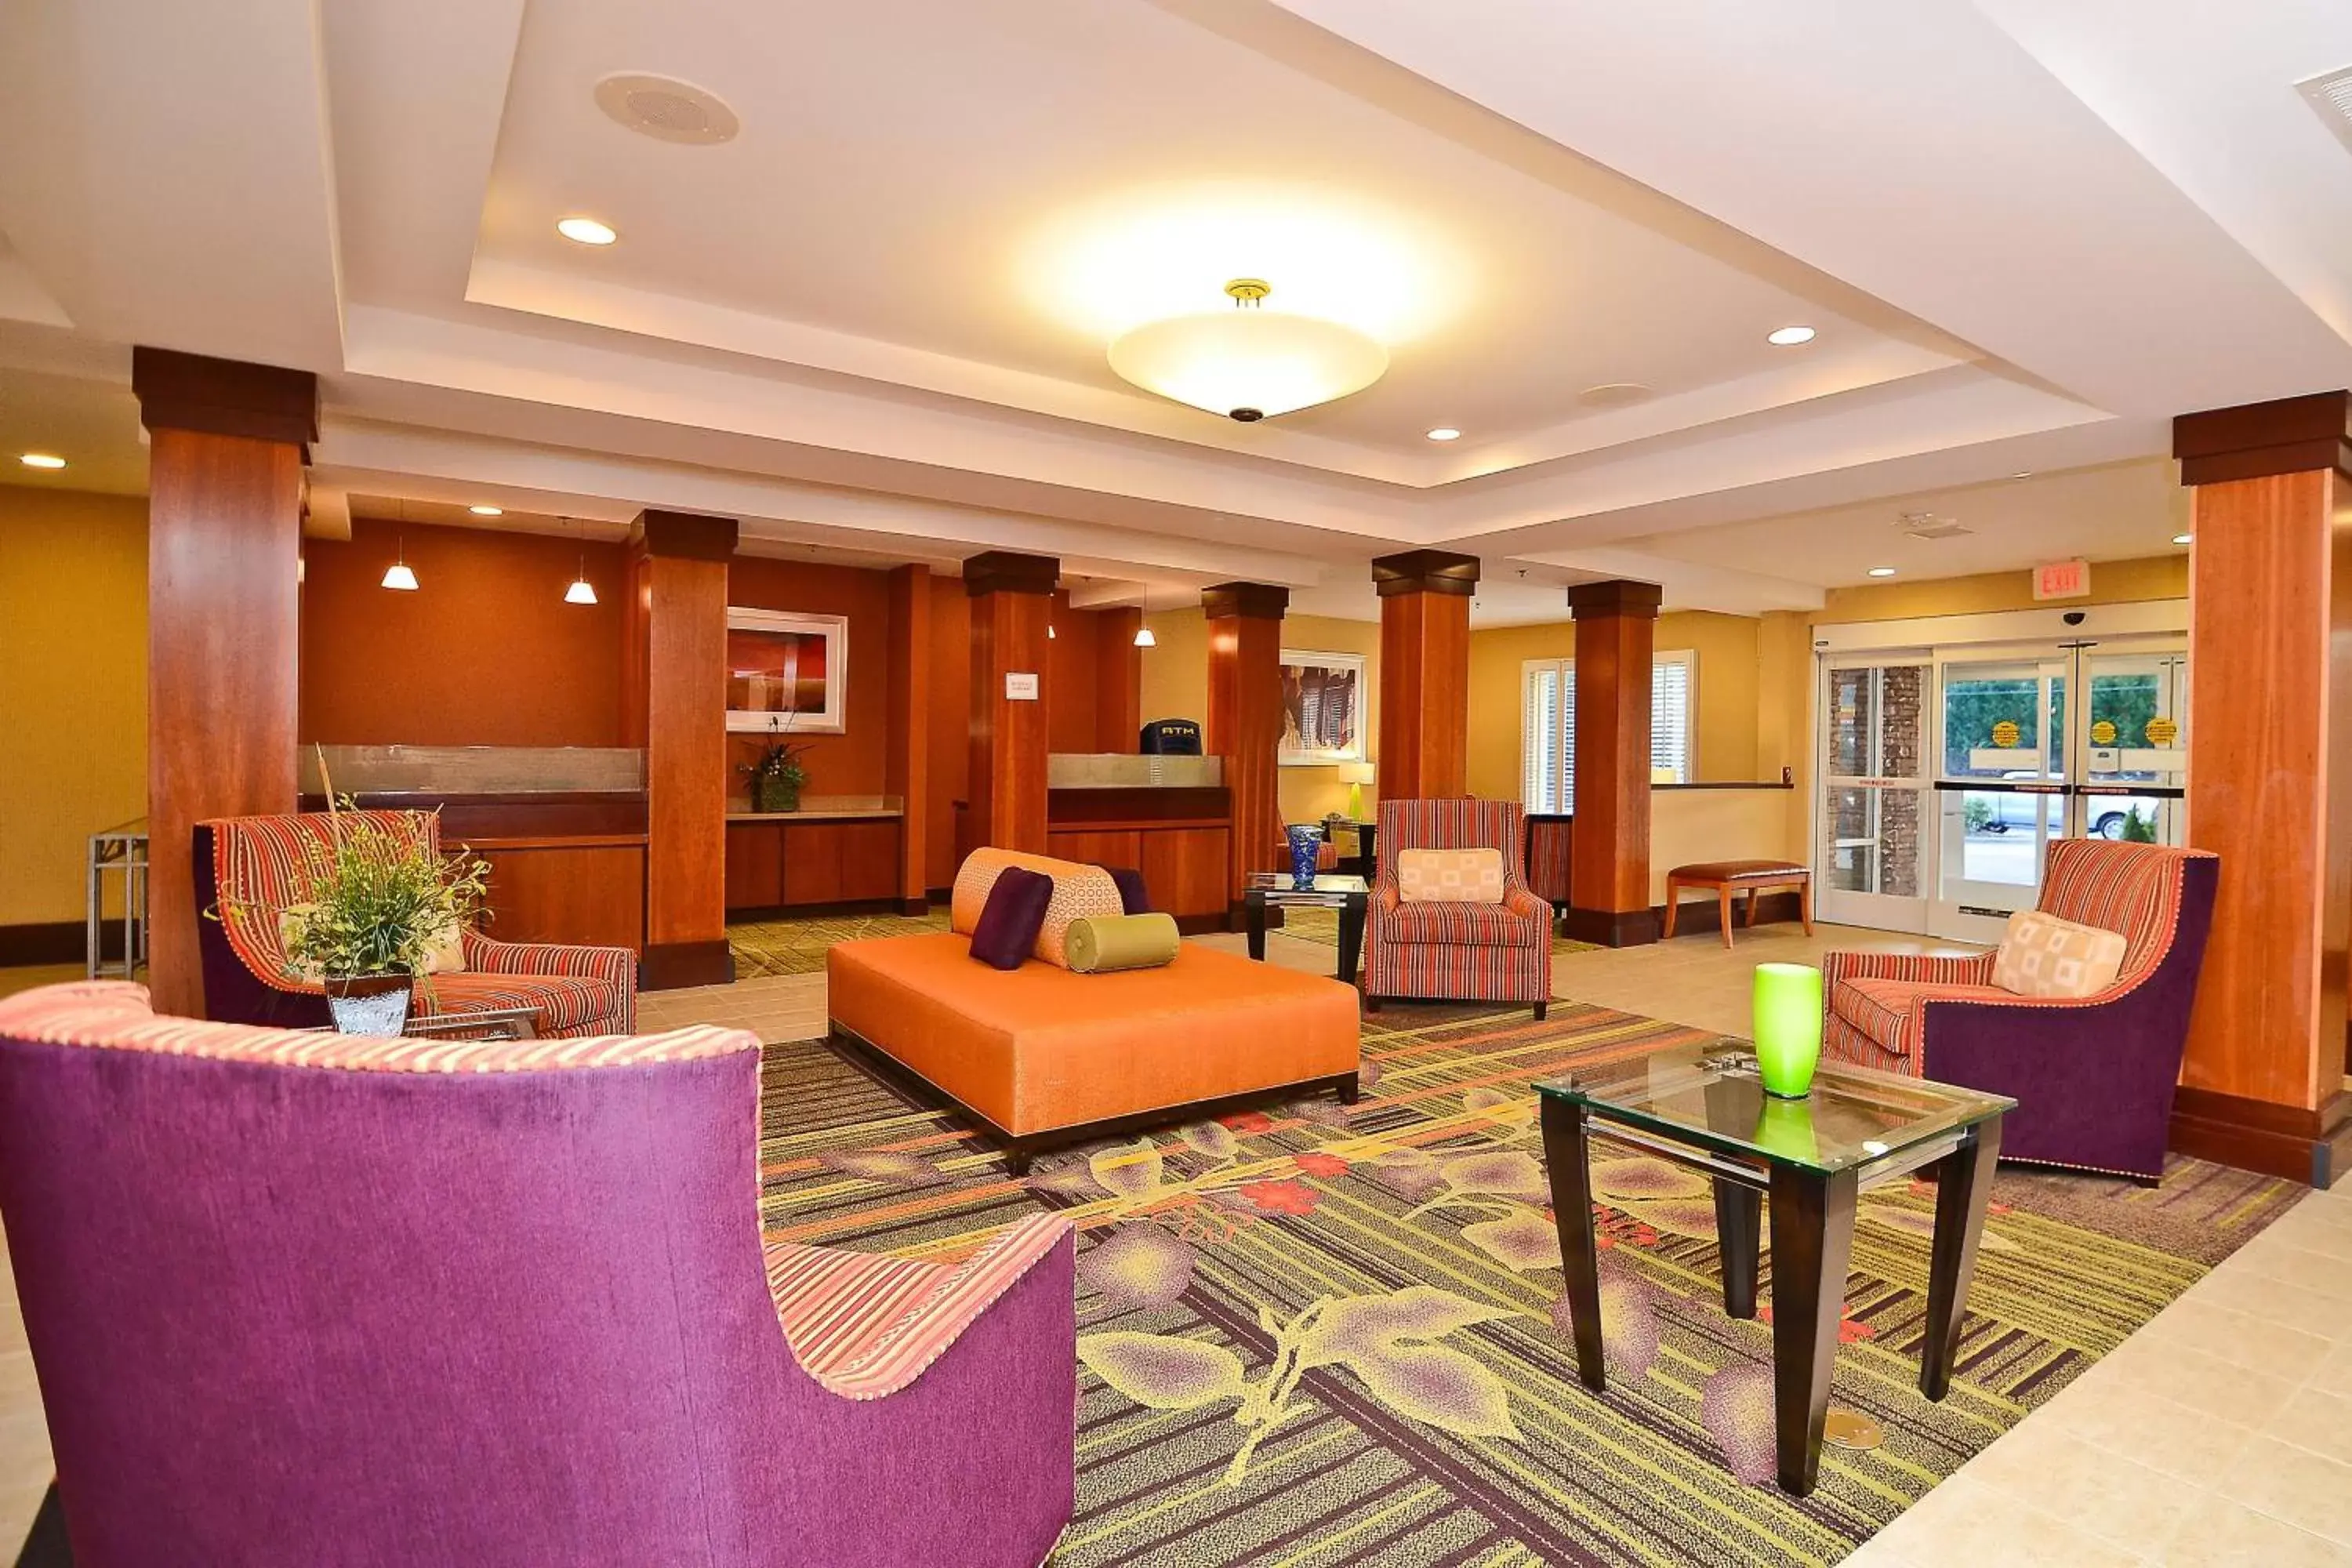 Lobby or reception, Lobby/Reception in Fairfield Inn & Suites Cherokee